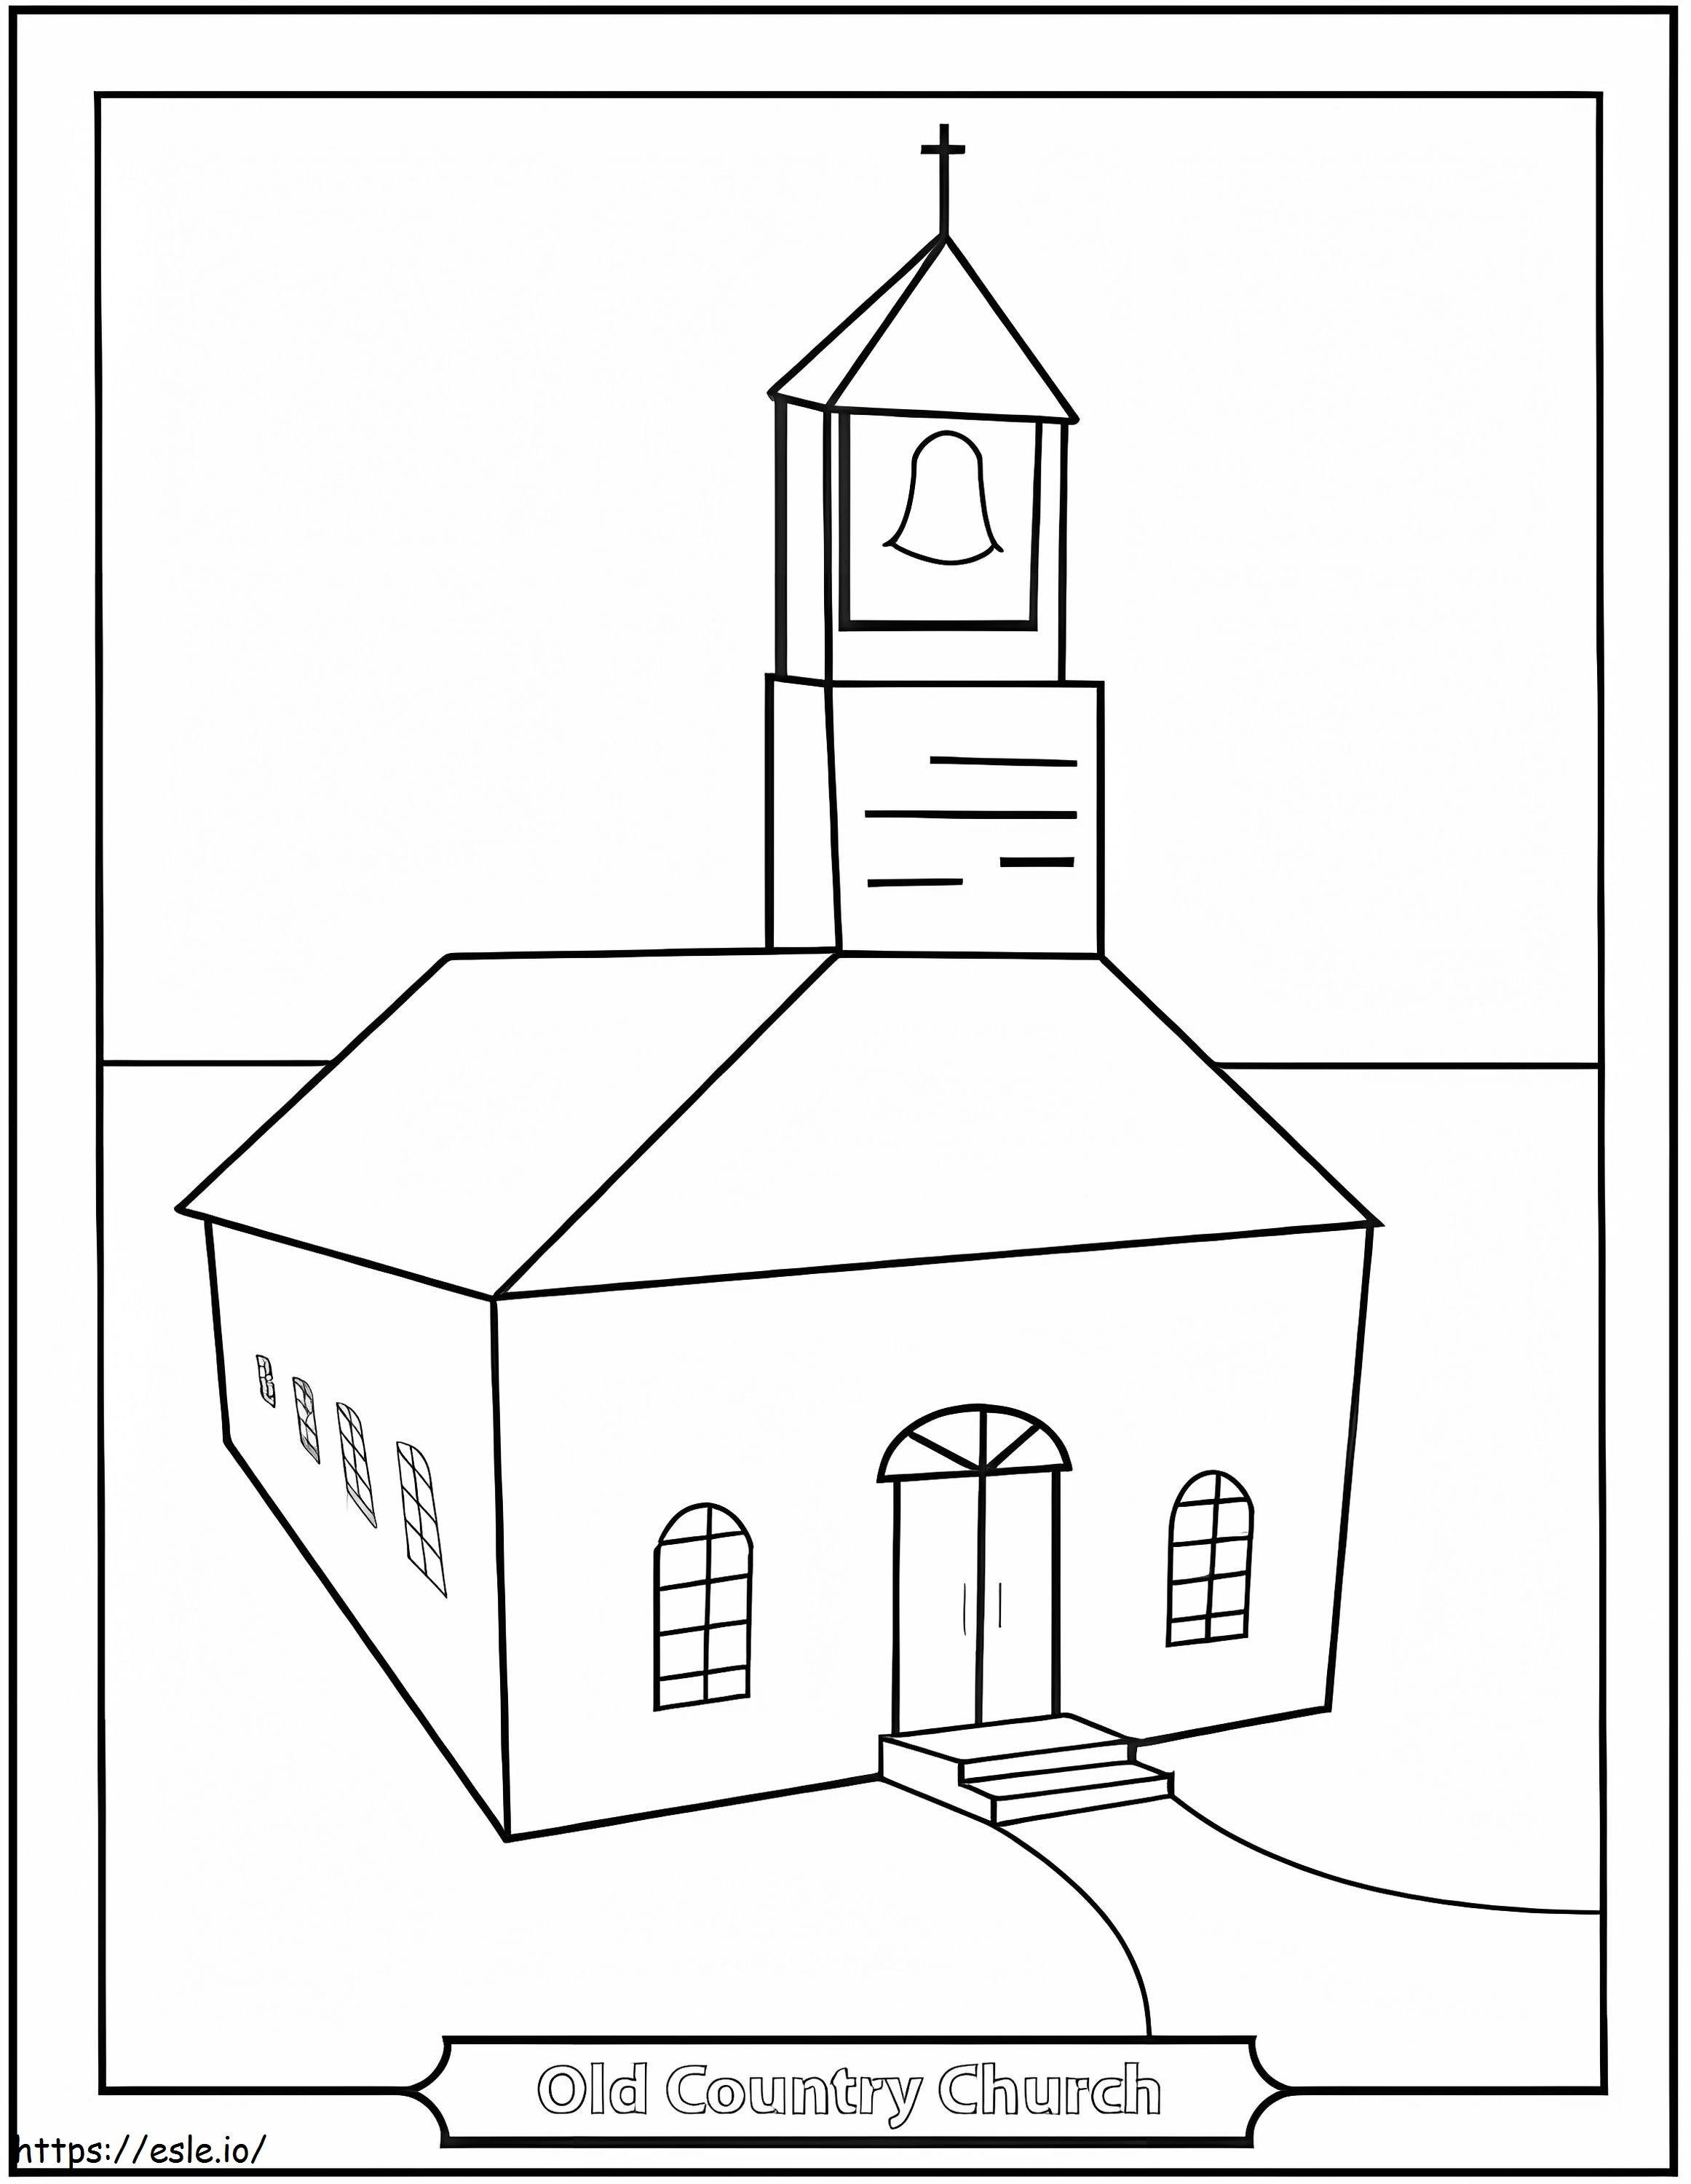 Igreja do Velho País para colorir